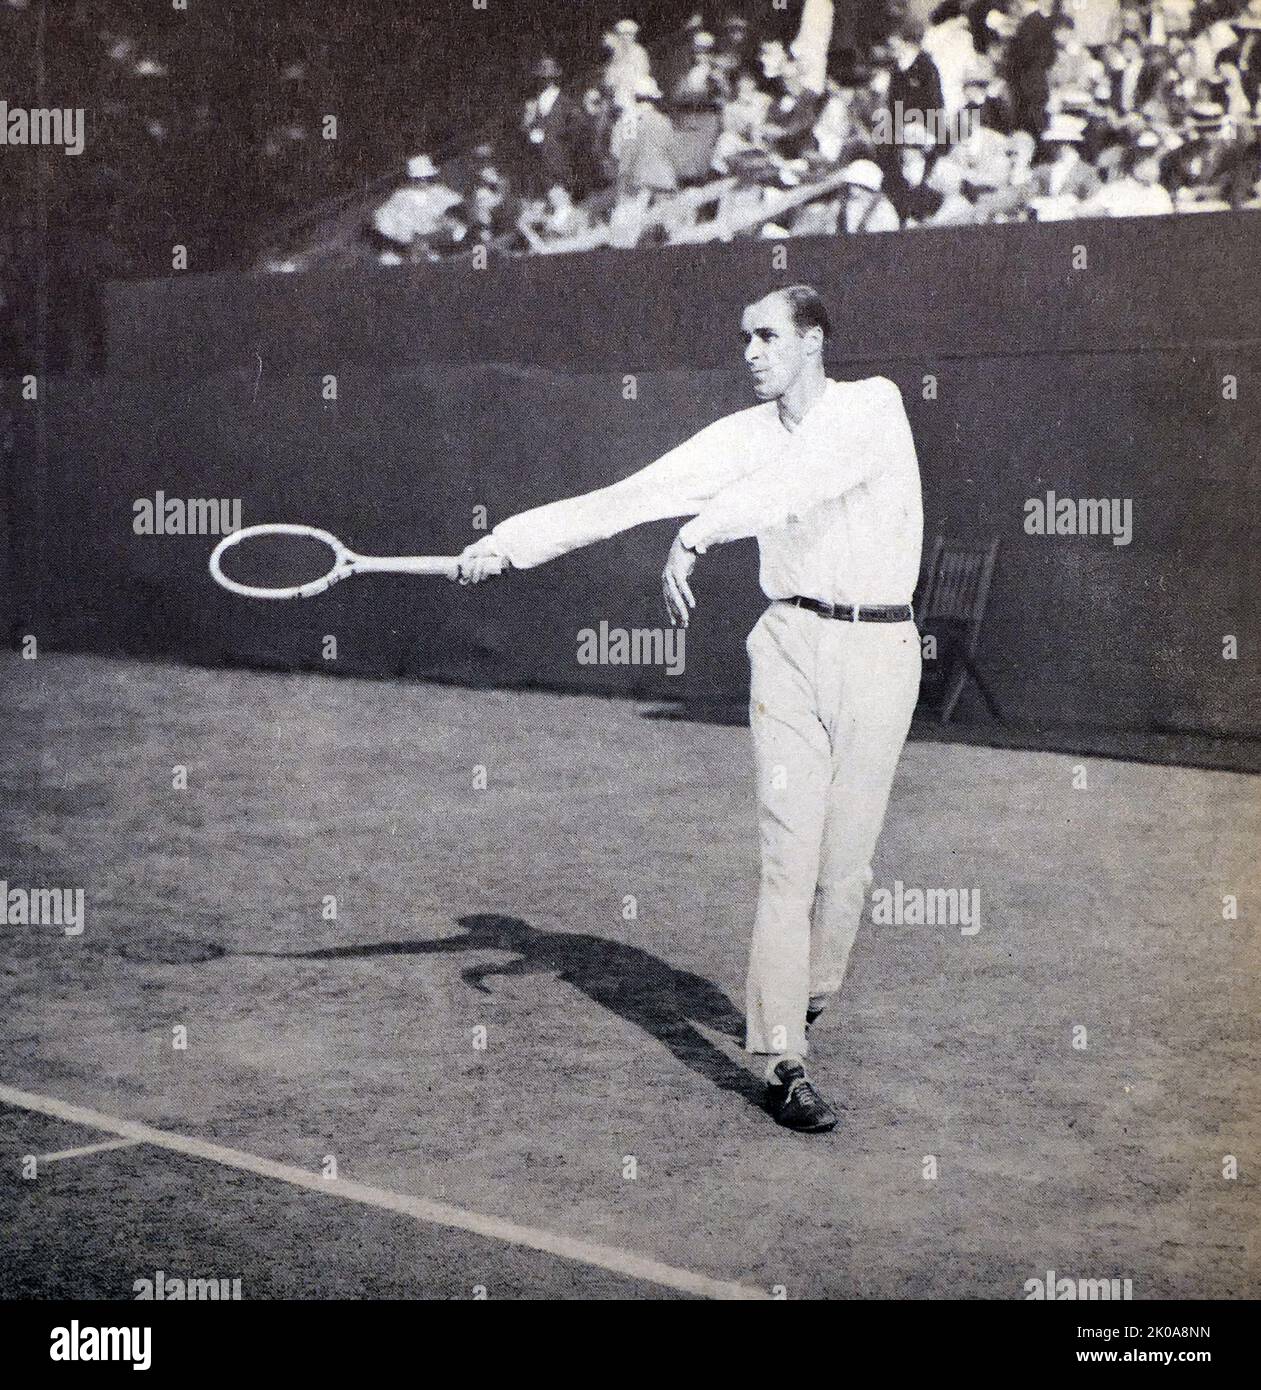 William Tatem Tilden II (10. Februar 1893 - 5. Juni 1953), mit dem Spitznamen „Big Bill“, war ein amerikanischer Tennisspieler. Tilden war von 1920 bis 1925 sechs Jahre lang die Nummer 1 der Welt. Er gewann 14 große Einzeltitel, darunter 10 Grand-Slam-Events, eine Hard-Court-Weltmeisterschaft und drei professionelle Majors. Er war der erste Amerikaner, der Wimbledon gewann und den Titel 1920 gewann. Außerdem gewann er sieben US-Meisterschaftstitel (gemeinsam mit Richard Sears und Bill Larned). Stockfoto